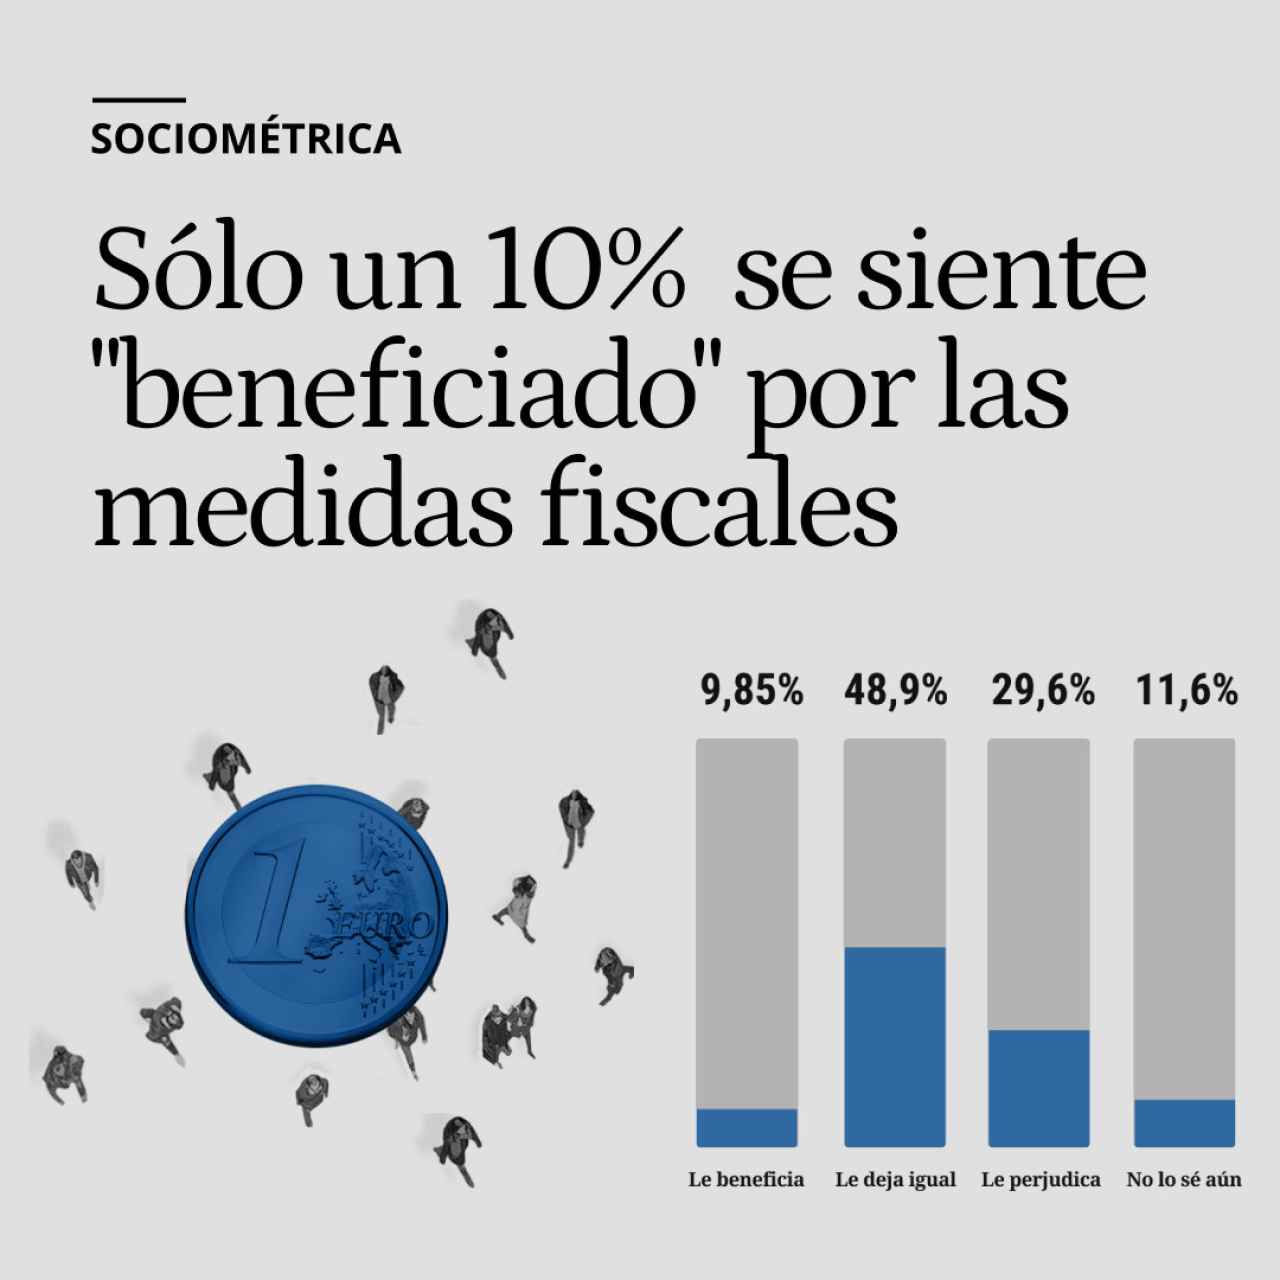 Sólo un 10% de los españoles se considera "beneficiado" por las medidas fiscales de Sánchez